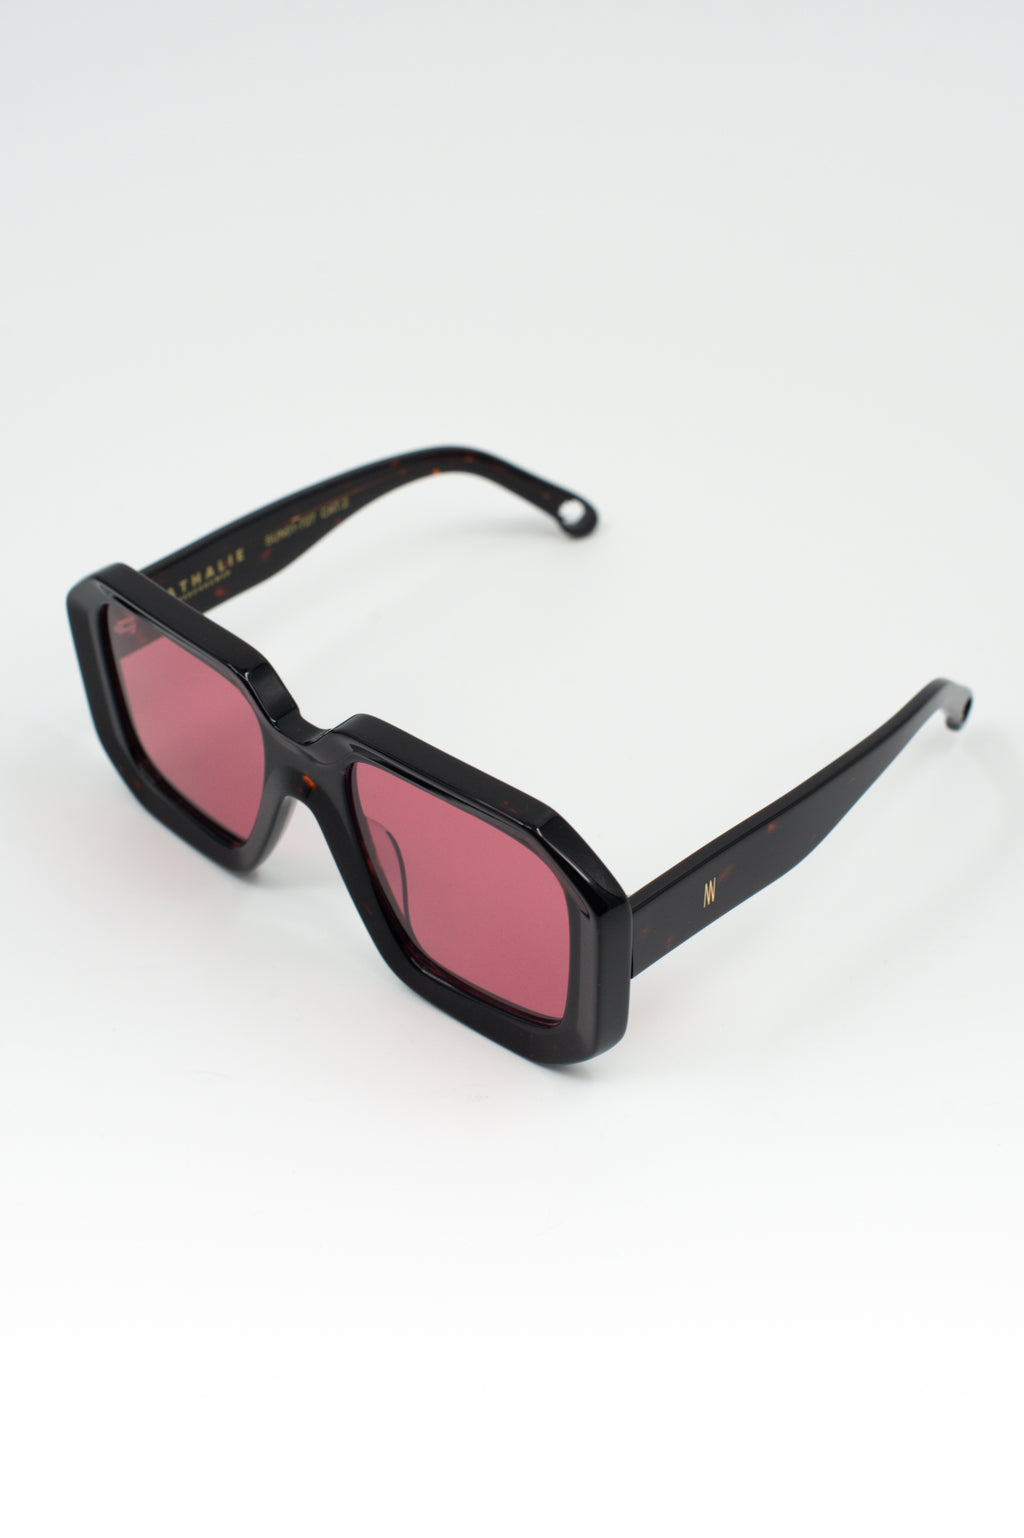 Onassis sunglasses in dark tortoise / cherry